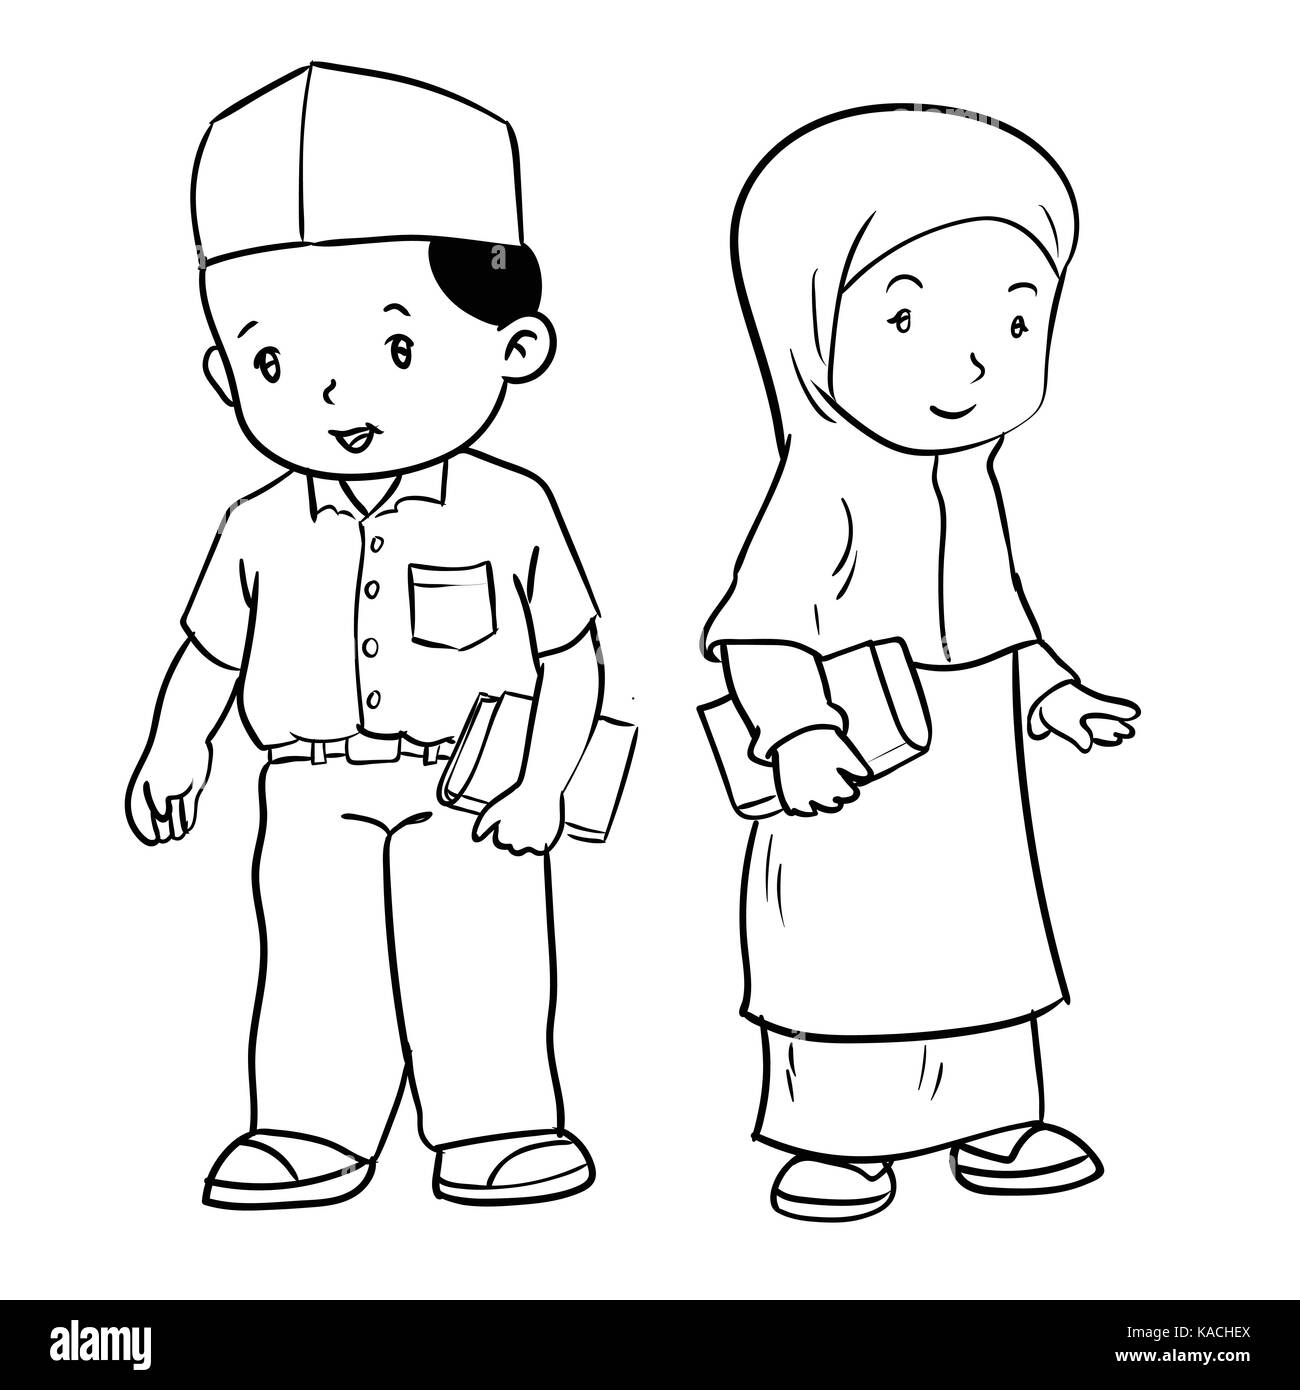 Disegno A Mano Di Bambini Musulmani In Piedi Isolato Su